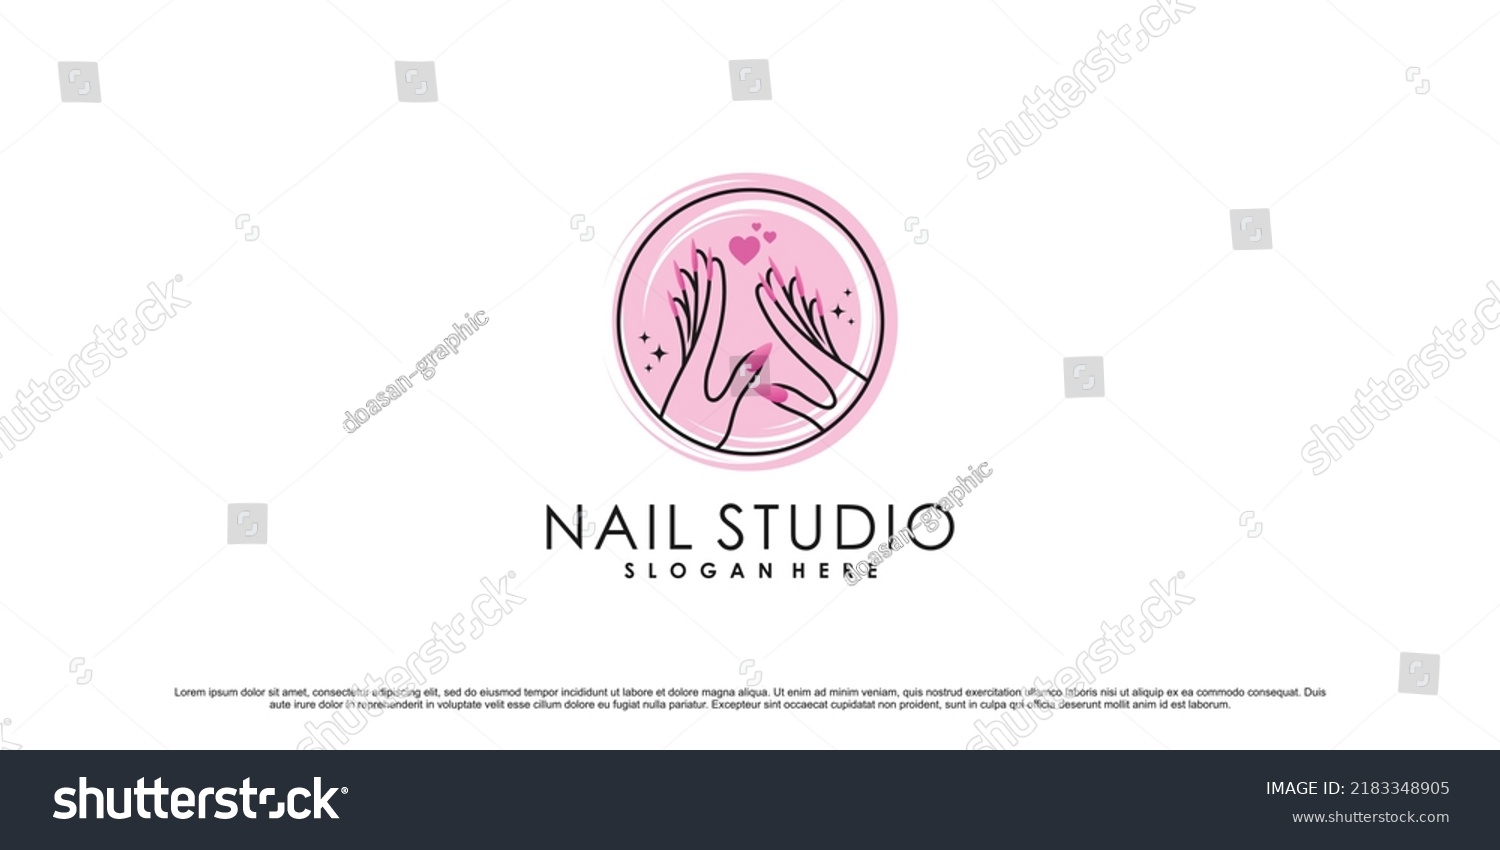 Nail Studio Logo Design Illustration Nail Stock Vector (Royalty Free ...